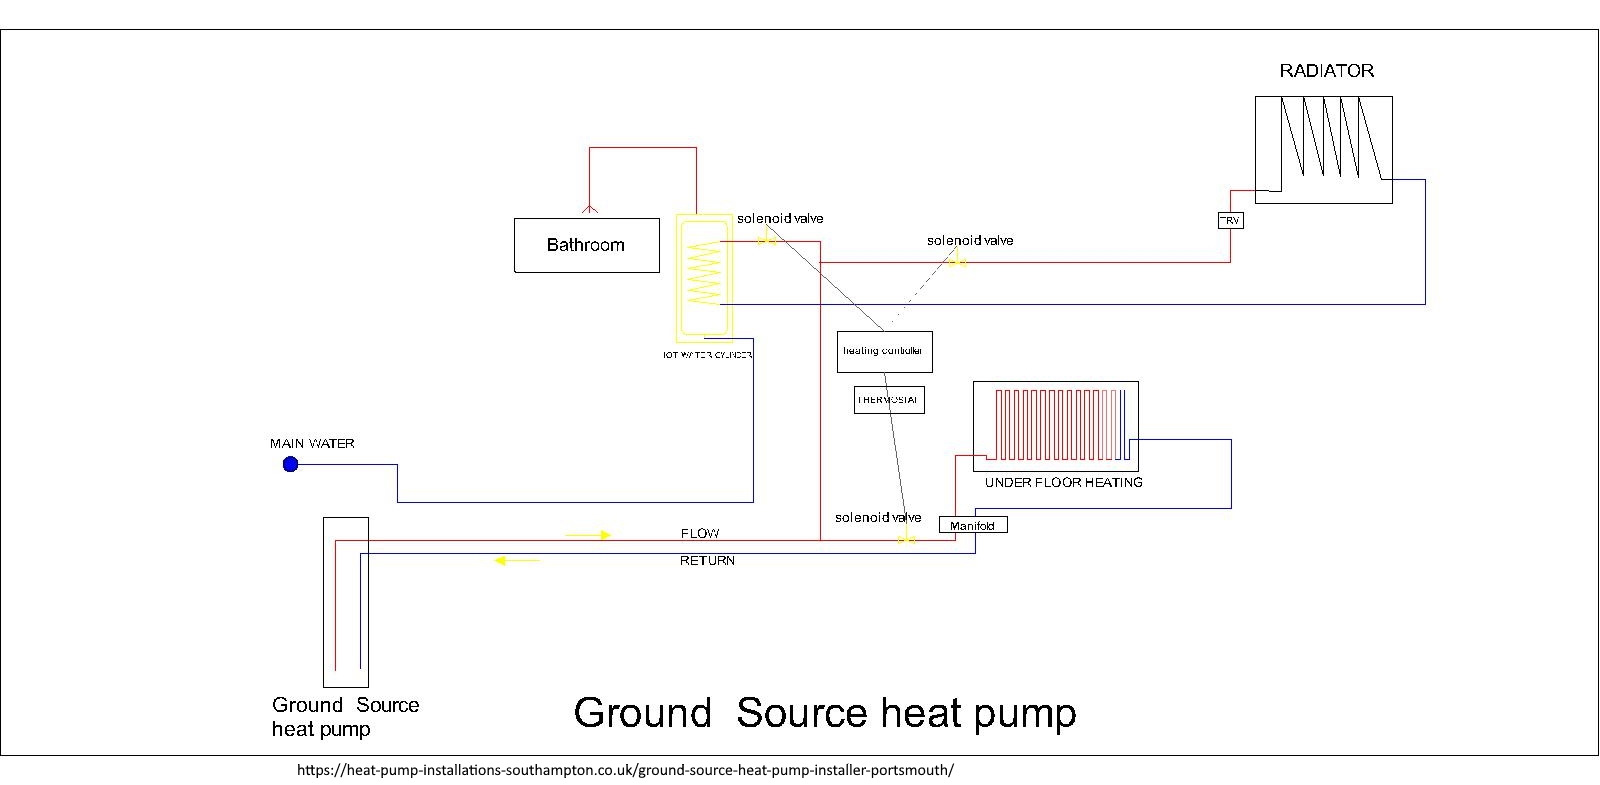 Heat Pump Installations Set to Offer Ground Source Heat Pump Installations in Portsmouth